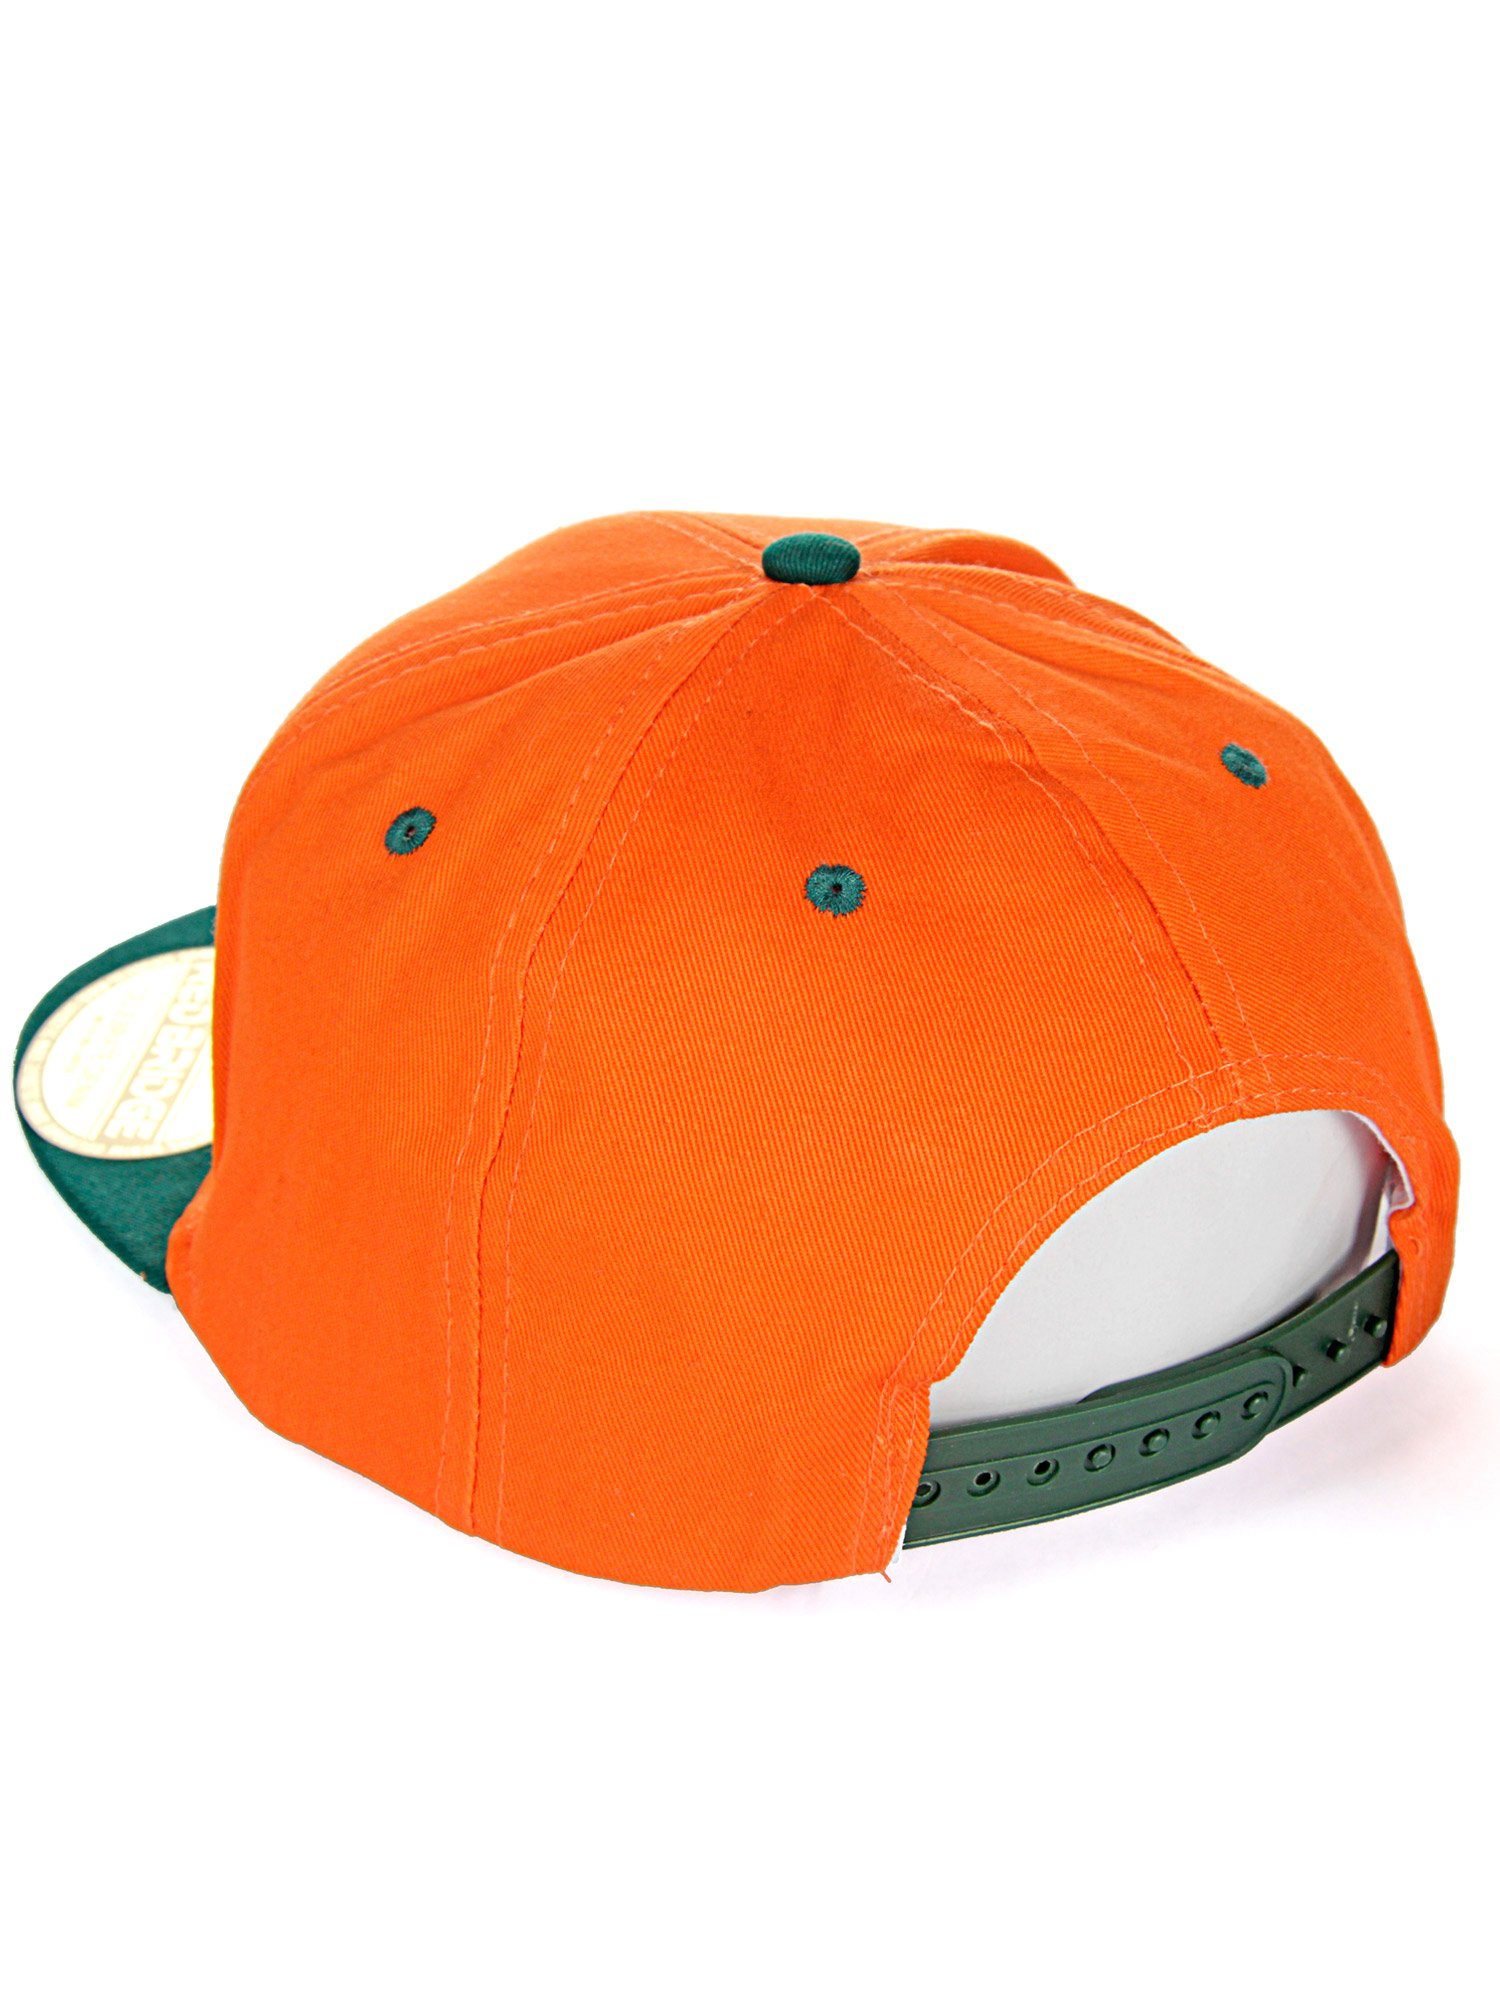 Baseball RedBridge mit Wellingborough orange-grün Cap Druckverschluss